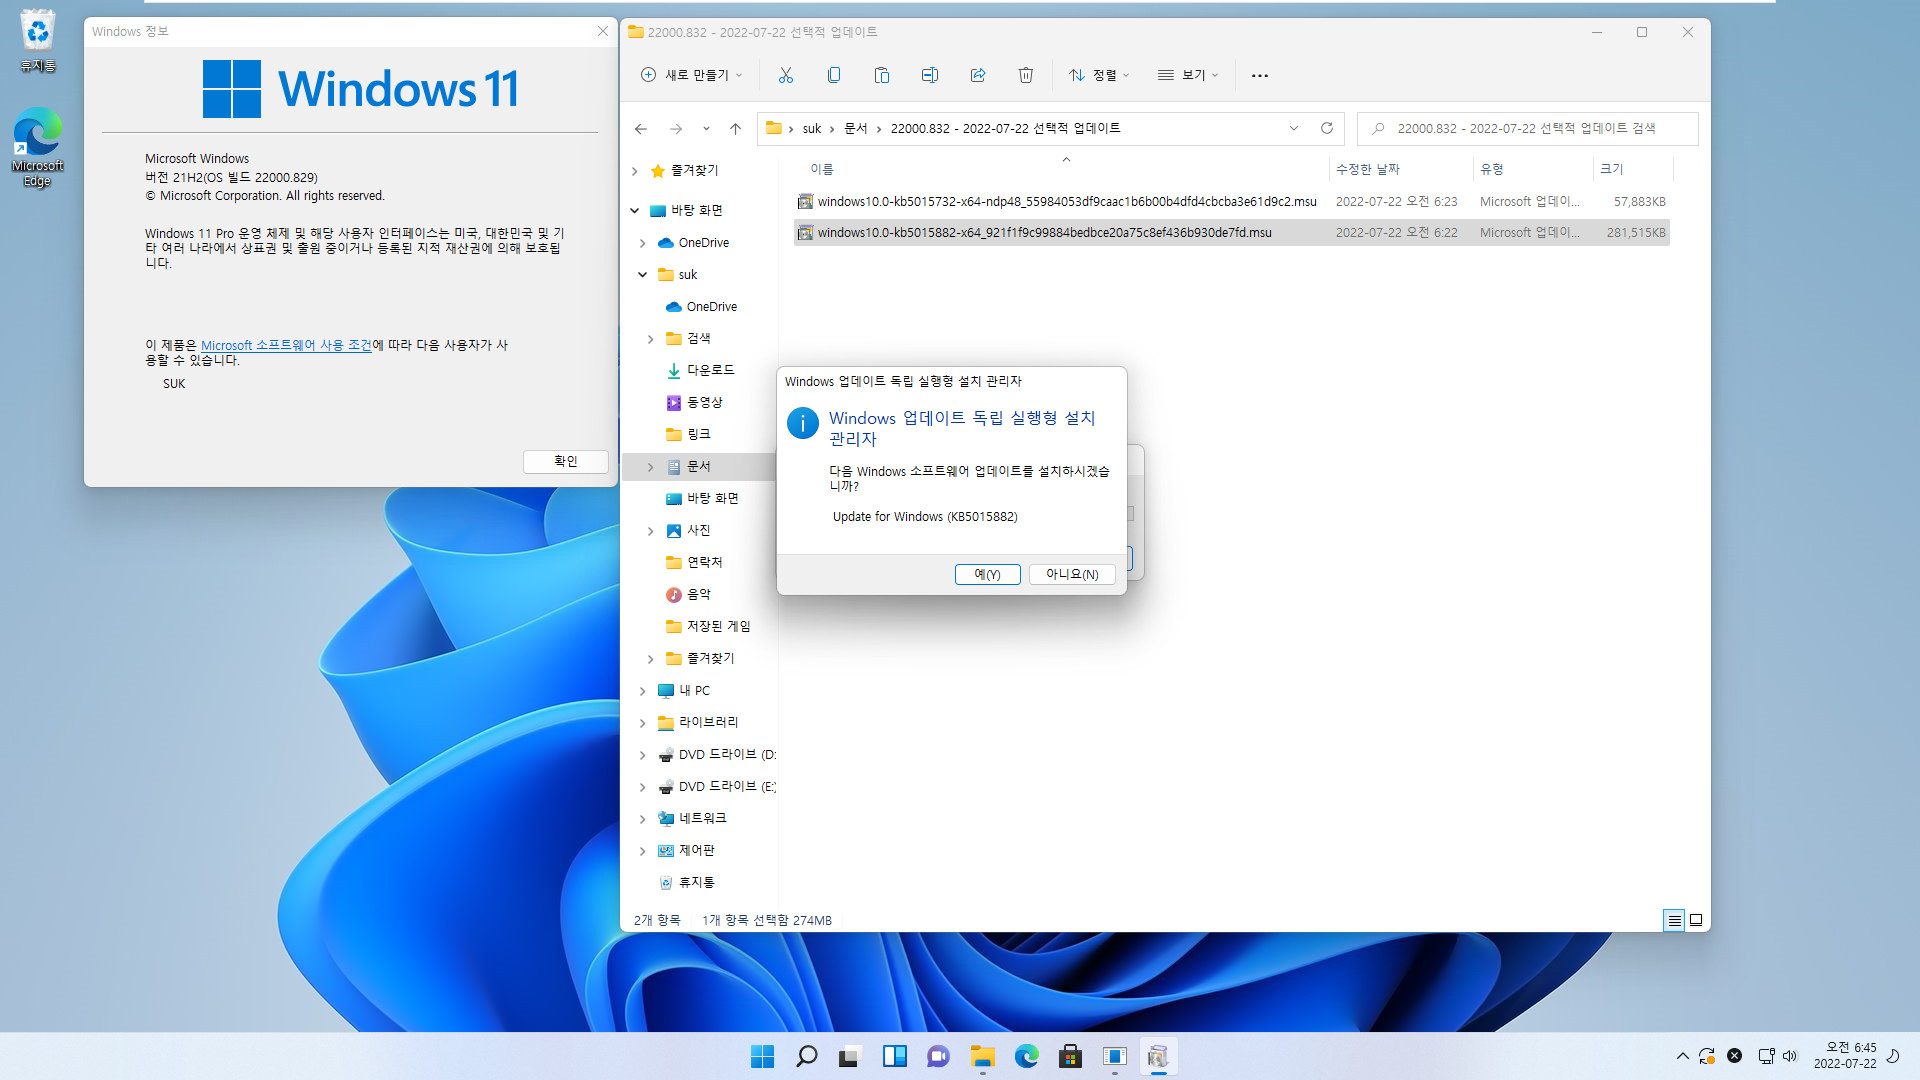 2022-07-22 금요일 - 선택적 업데이트 - Windows 11 버전 21H2, 빌드 22000.832 - 누적 업데이트 KB5015882 - 설치 테스트 (msu 파일) 2022-07-22_064548.jpg